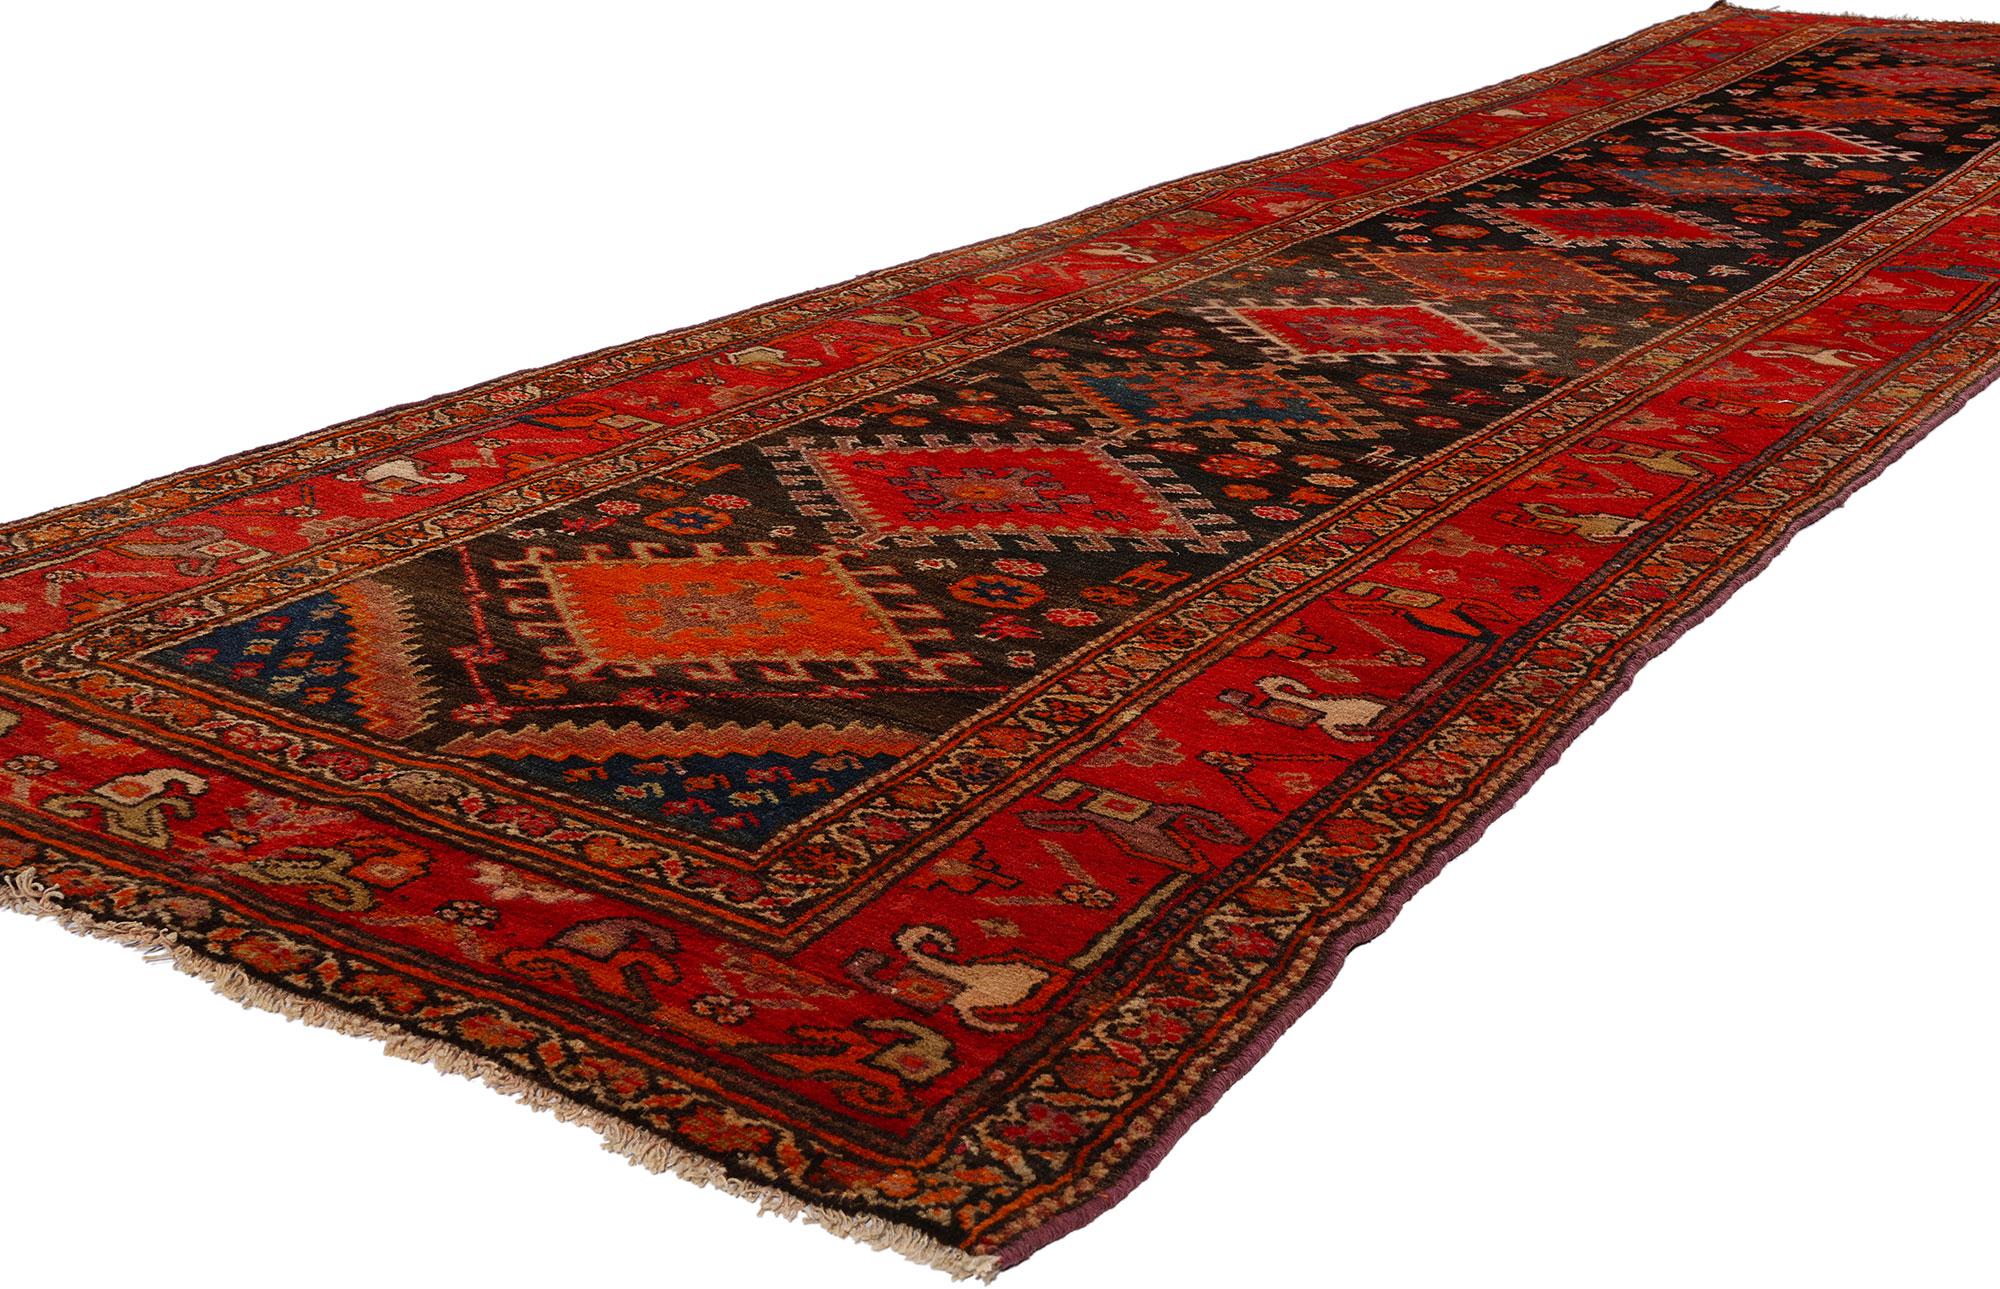 53875 Antiker persischer Aserbaidschan-Teppich Läufer, 03'05 x 13'00. Persische Aserbaidschan-Teppiche sind traditionelle handgewebte Teppiche, die aus der Region Aserbaidschan im Nordwesten des Iran stammen. Diese Teppiche sind für ihre